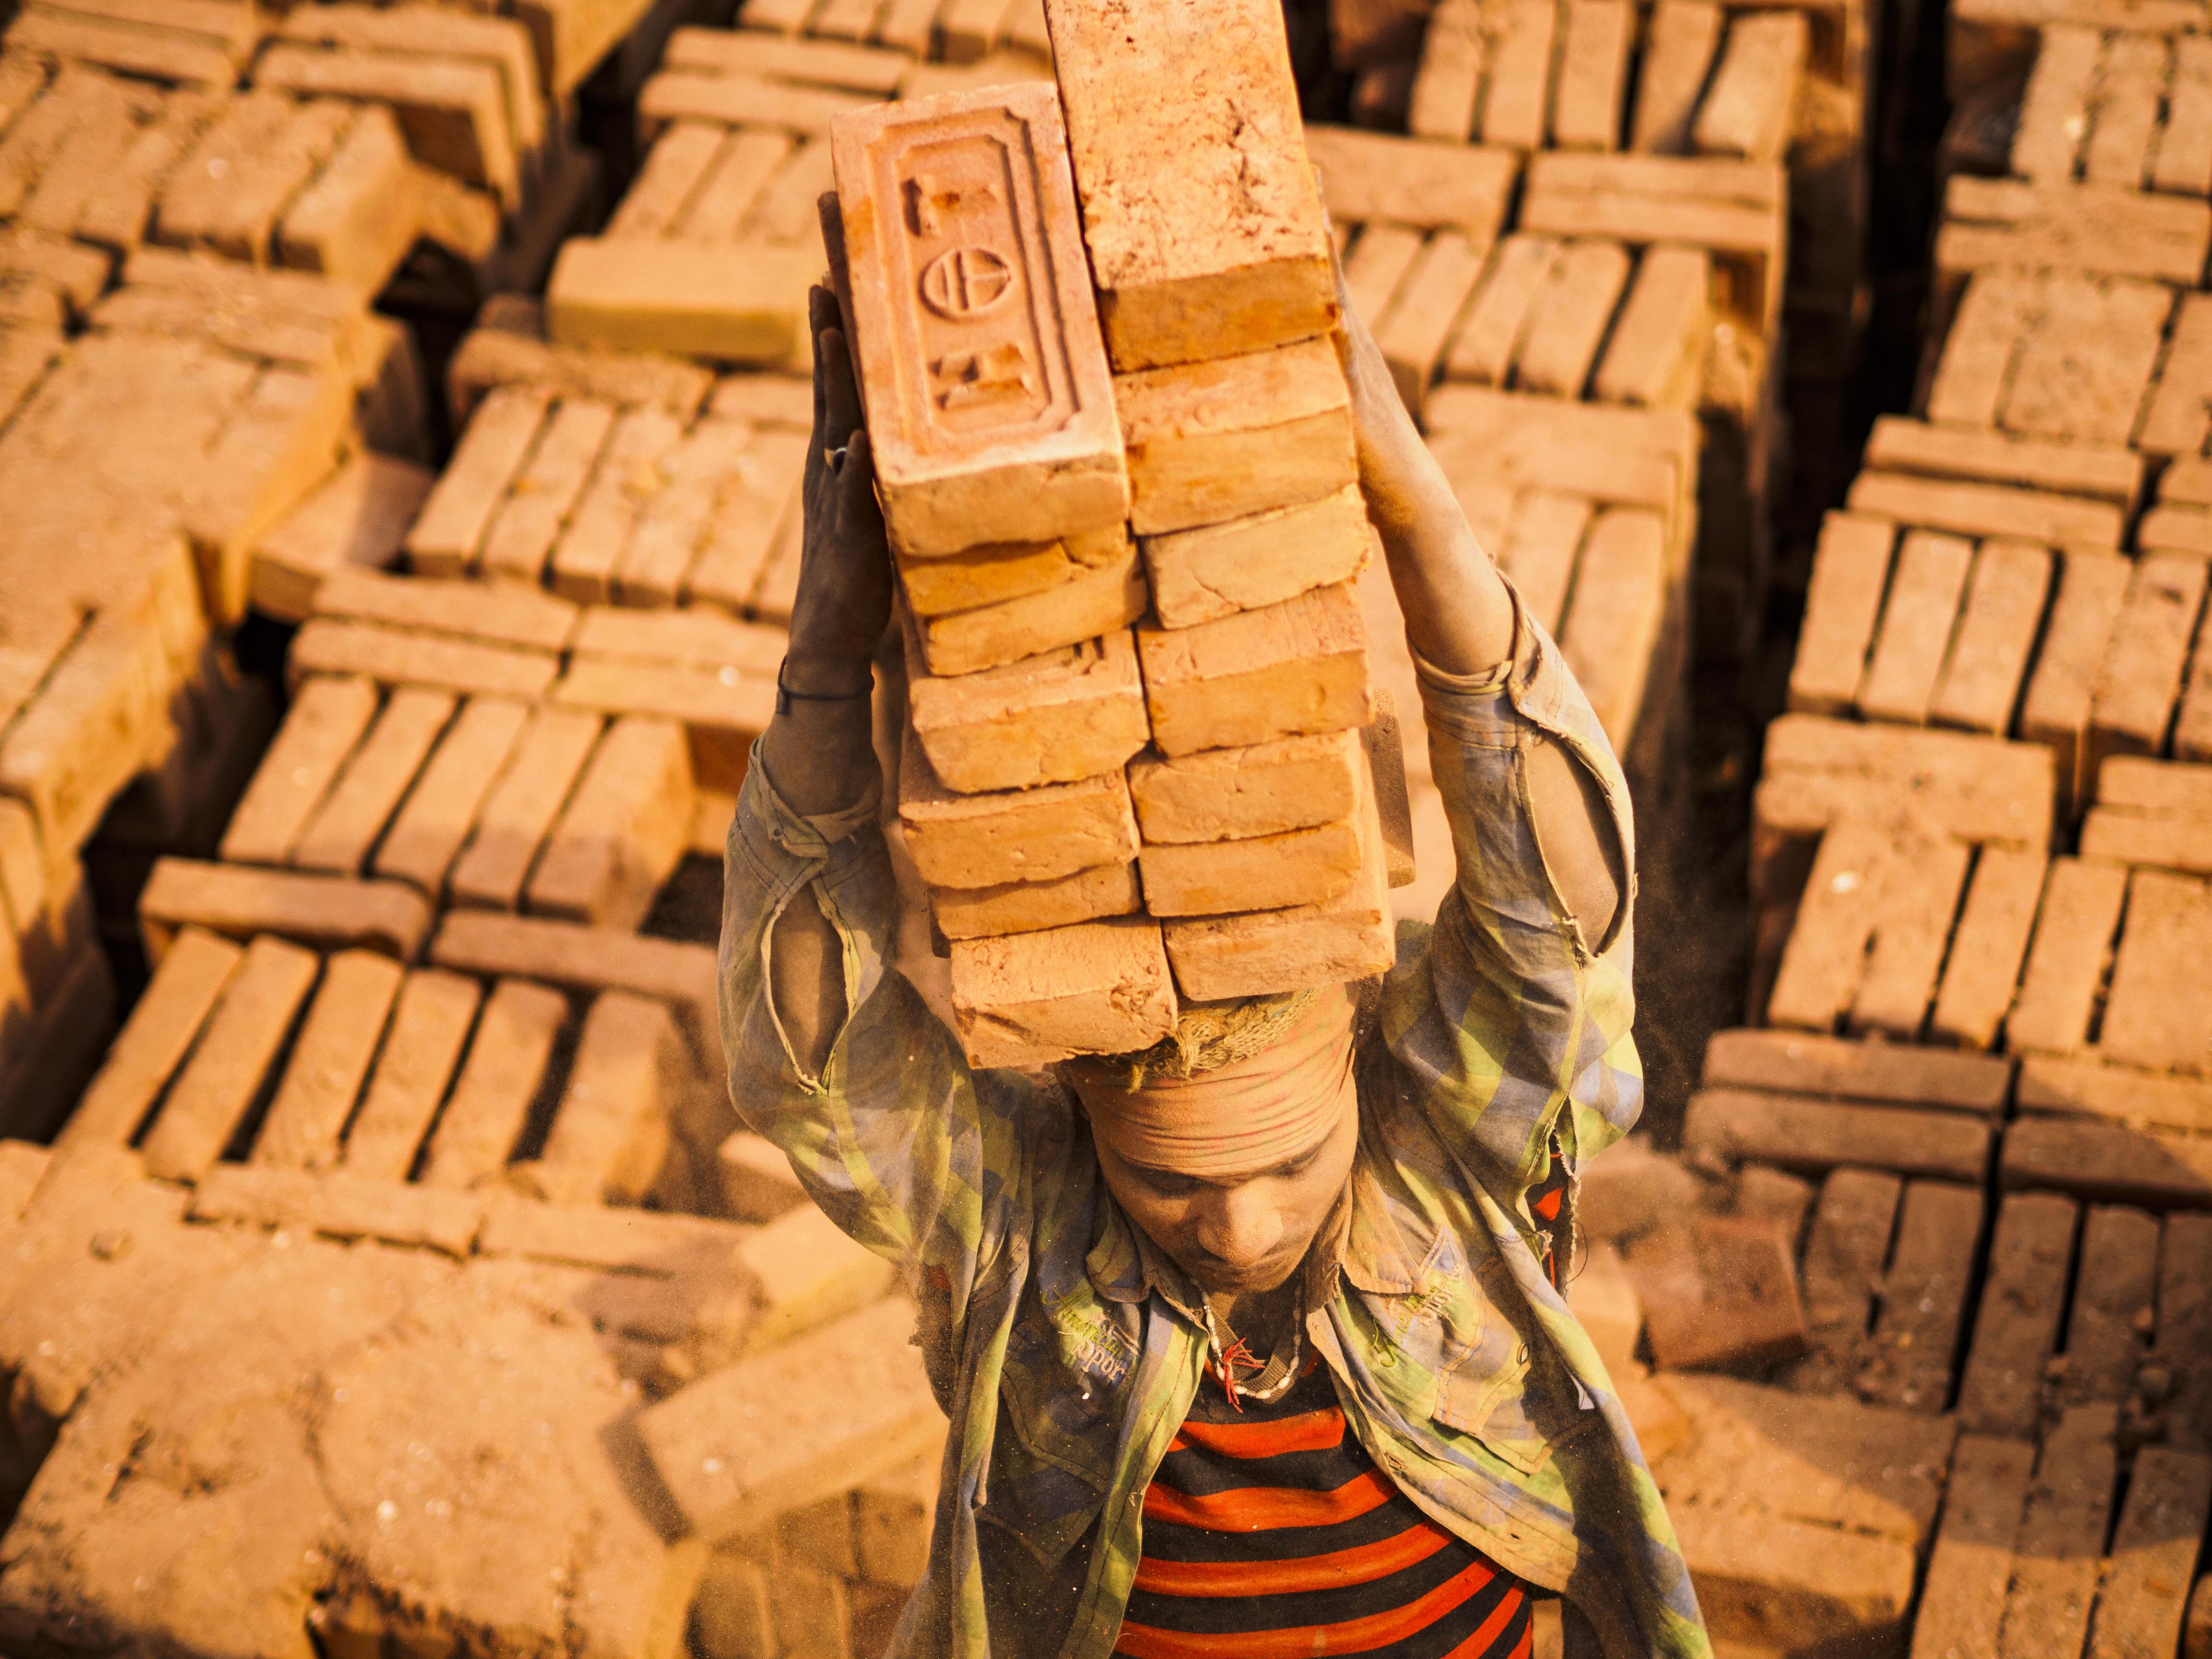 Brick Makers of Bagmati